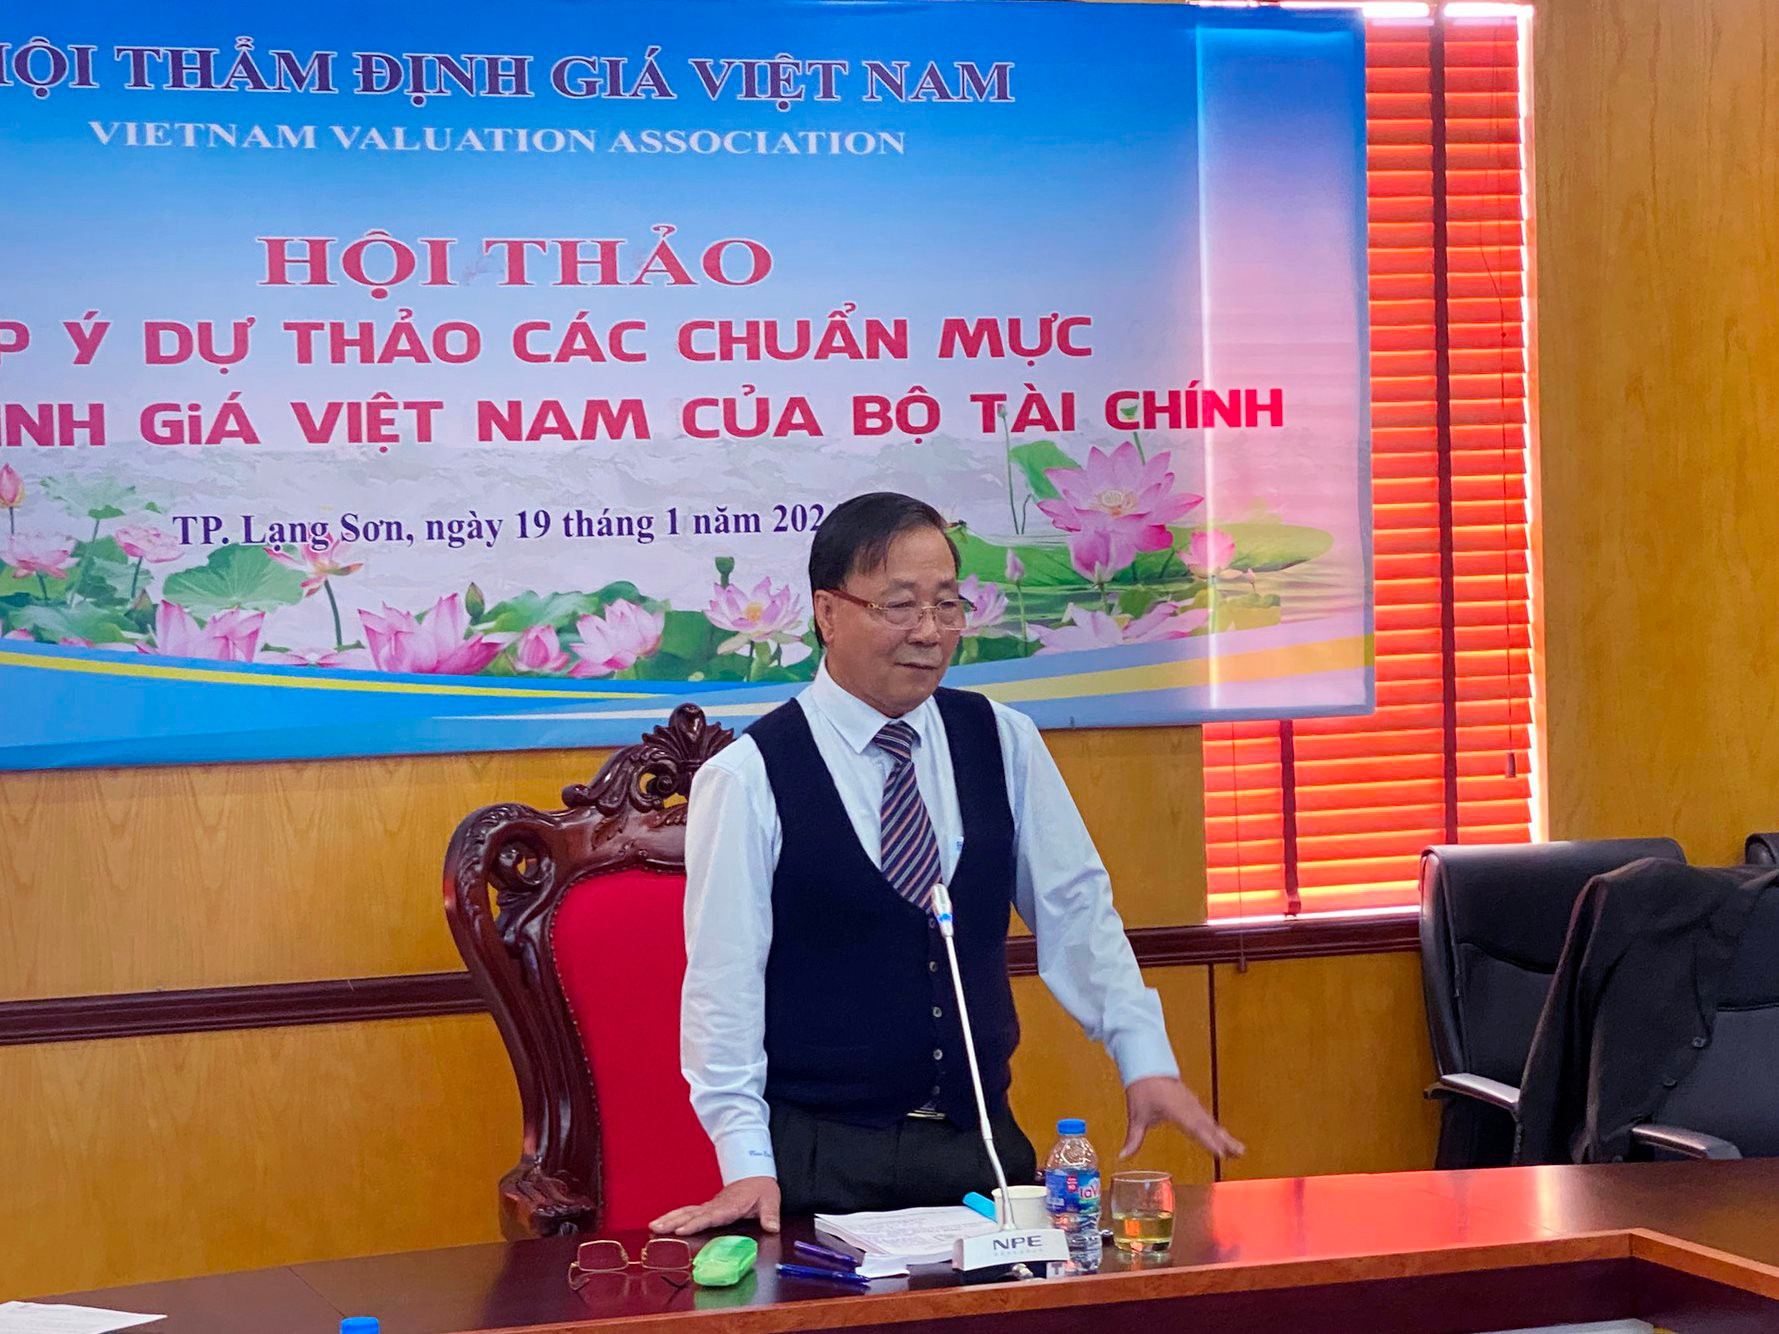 Chủ tịch VVA Nguyễn Tiến Thỏa: Kiến tạo Chuẩn mực toàn diện để ngành thẩm định giá phát triển bền vững